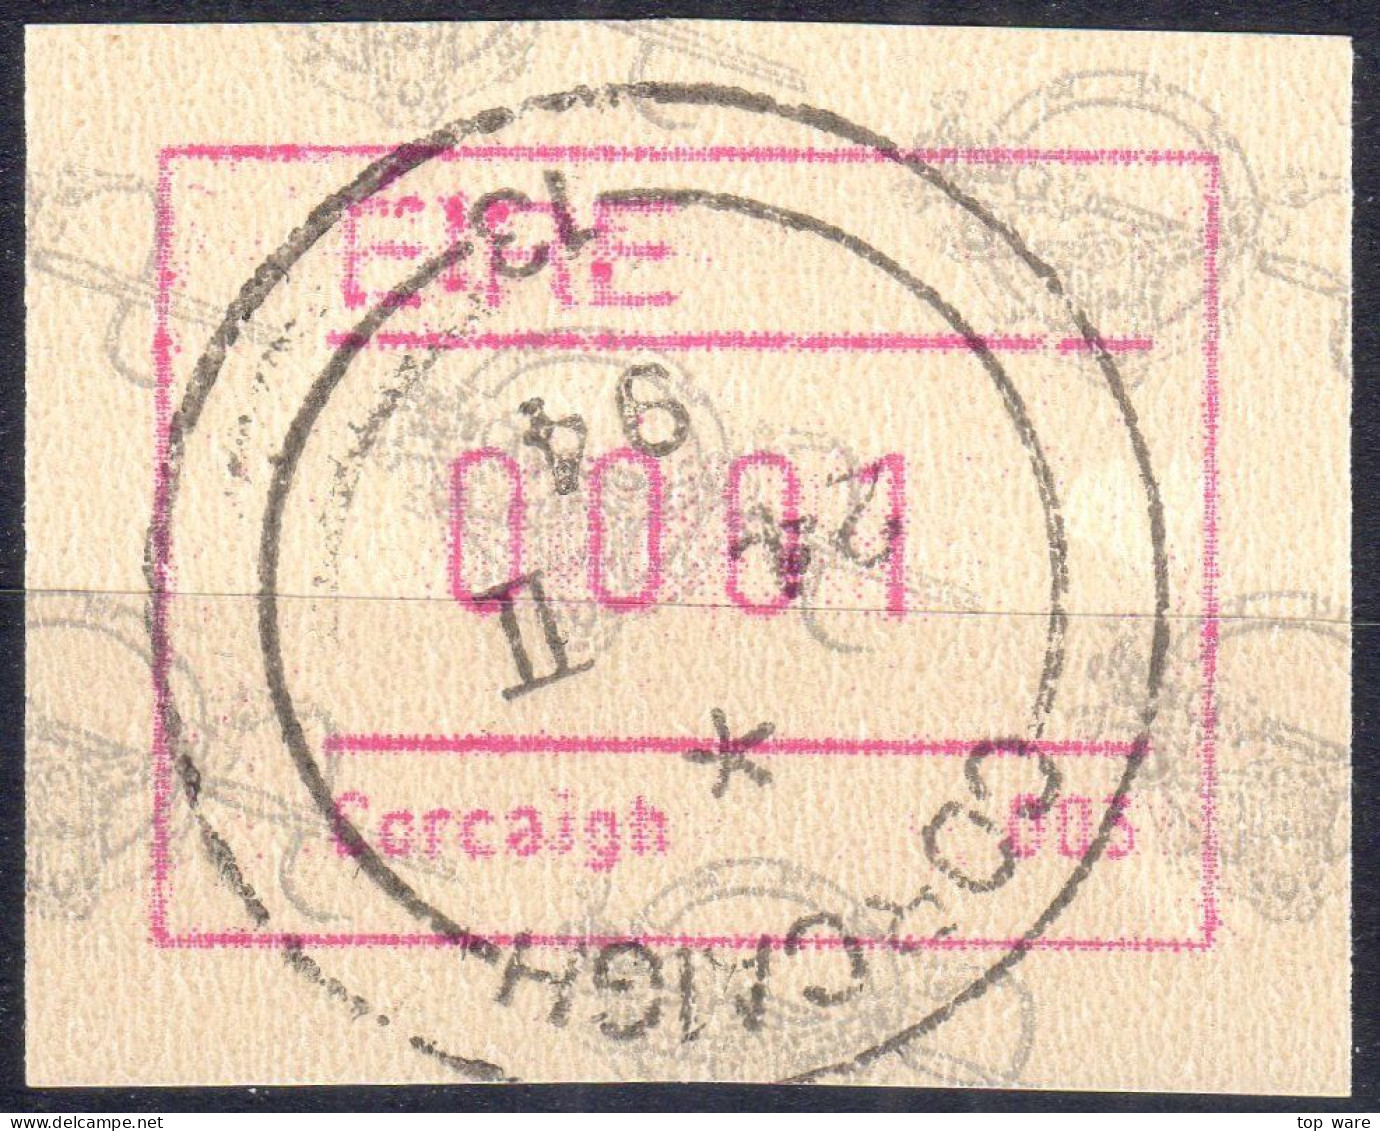 EIRE IRELAND ATM STAMPS Michel 4.3.2 Cork Corcaigh 003 CTO. 24 II 94 Frama Automatenmarken Etiquetas - Vignettes D'affranchissement (Frama)